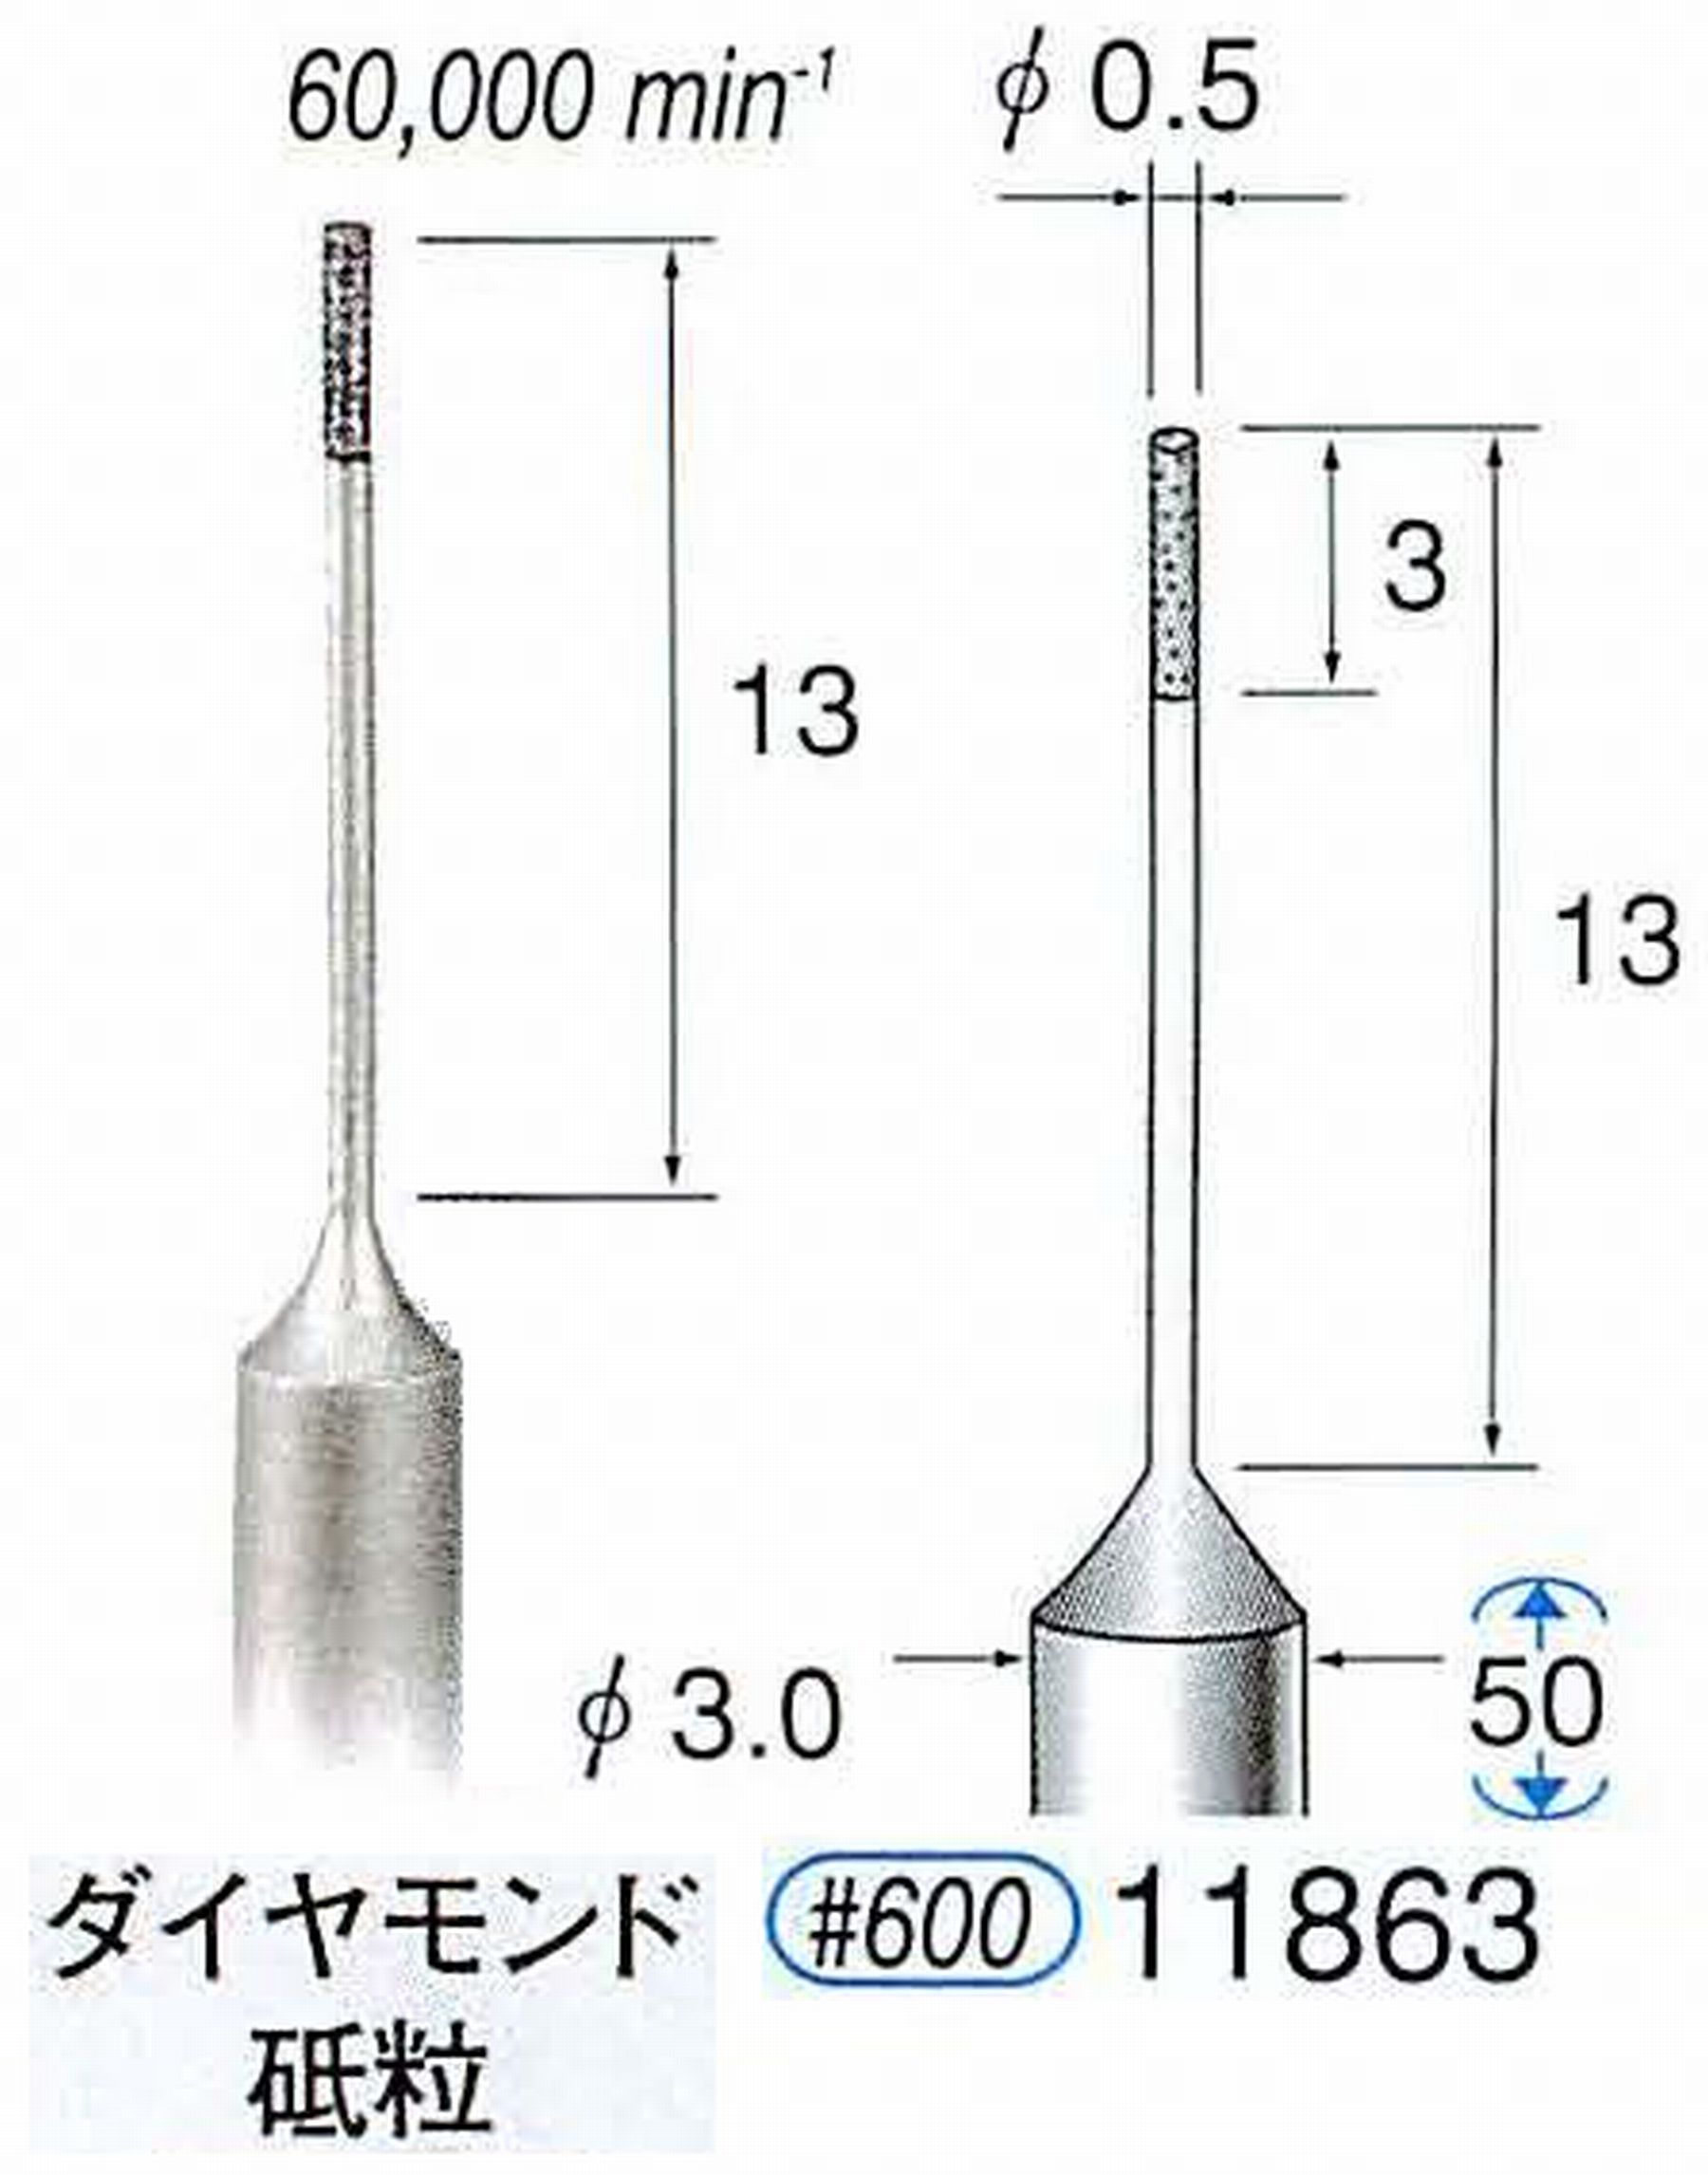 ナカニシ/NAKANISHI SP電着ダイヤモンド ダイヤモンド砥粒 軸径(シャンク)φ3.0mm 11863